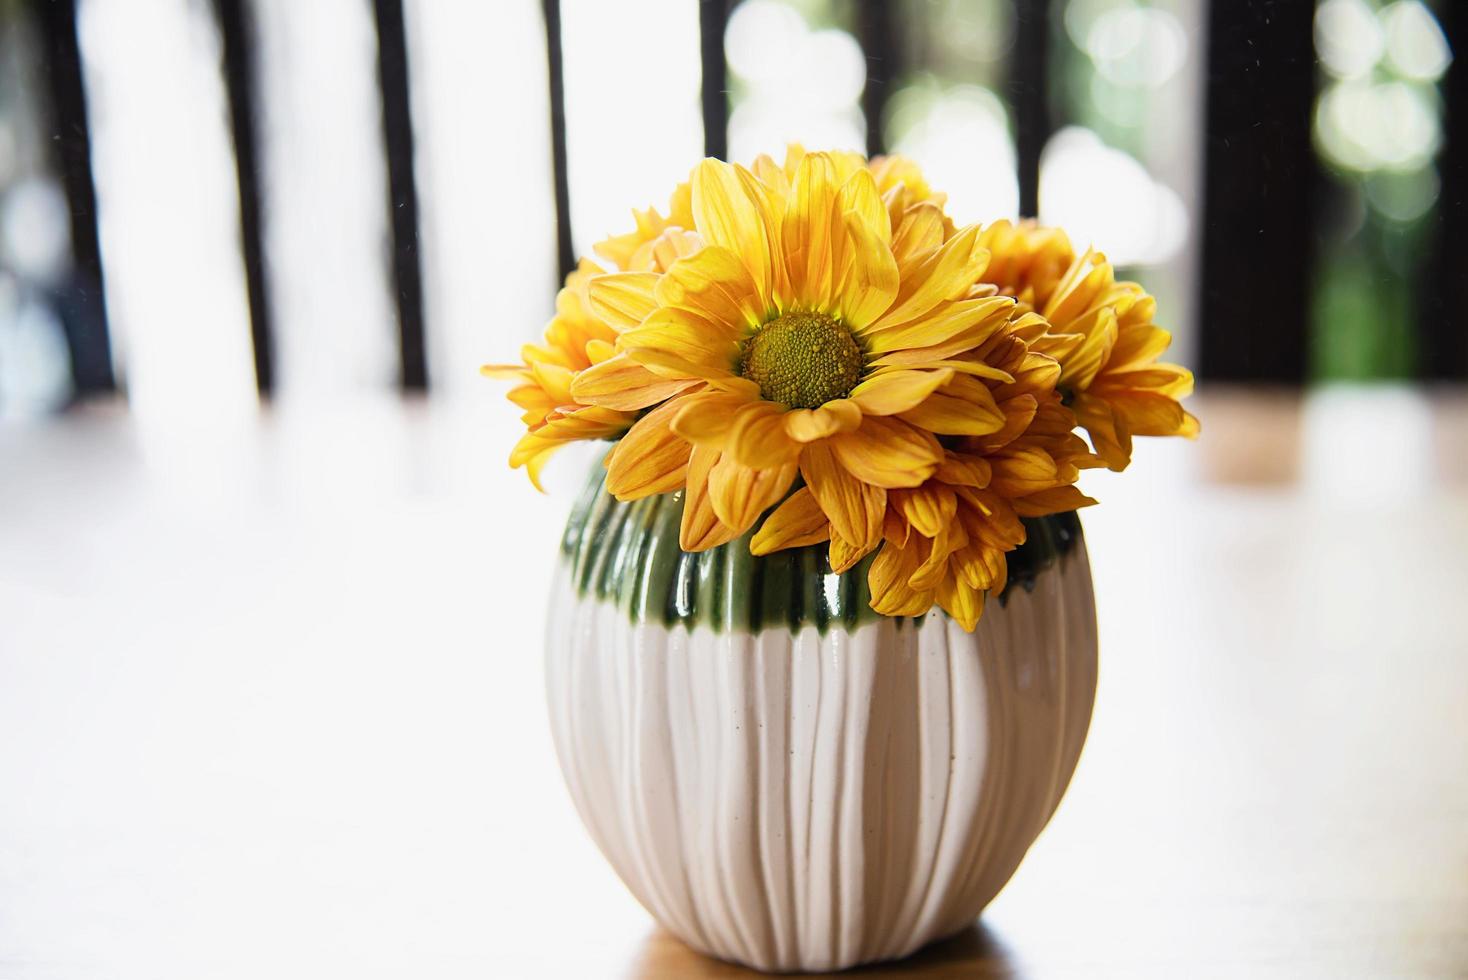 petite fleur de soleil fraîche et colorée dans un pot en céramique - décoration de fleurs jaunes pour une utilisation en arrière-plan photo